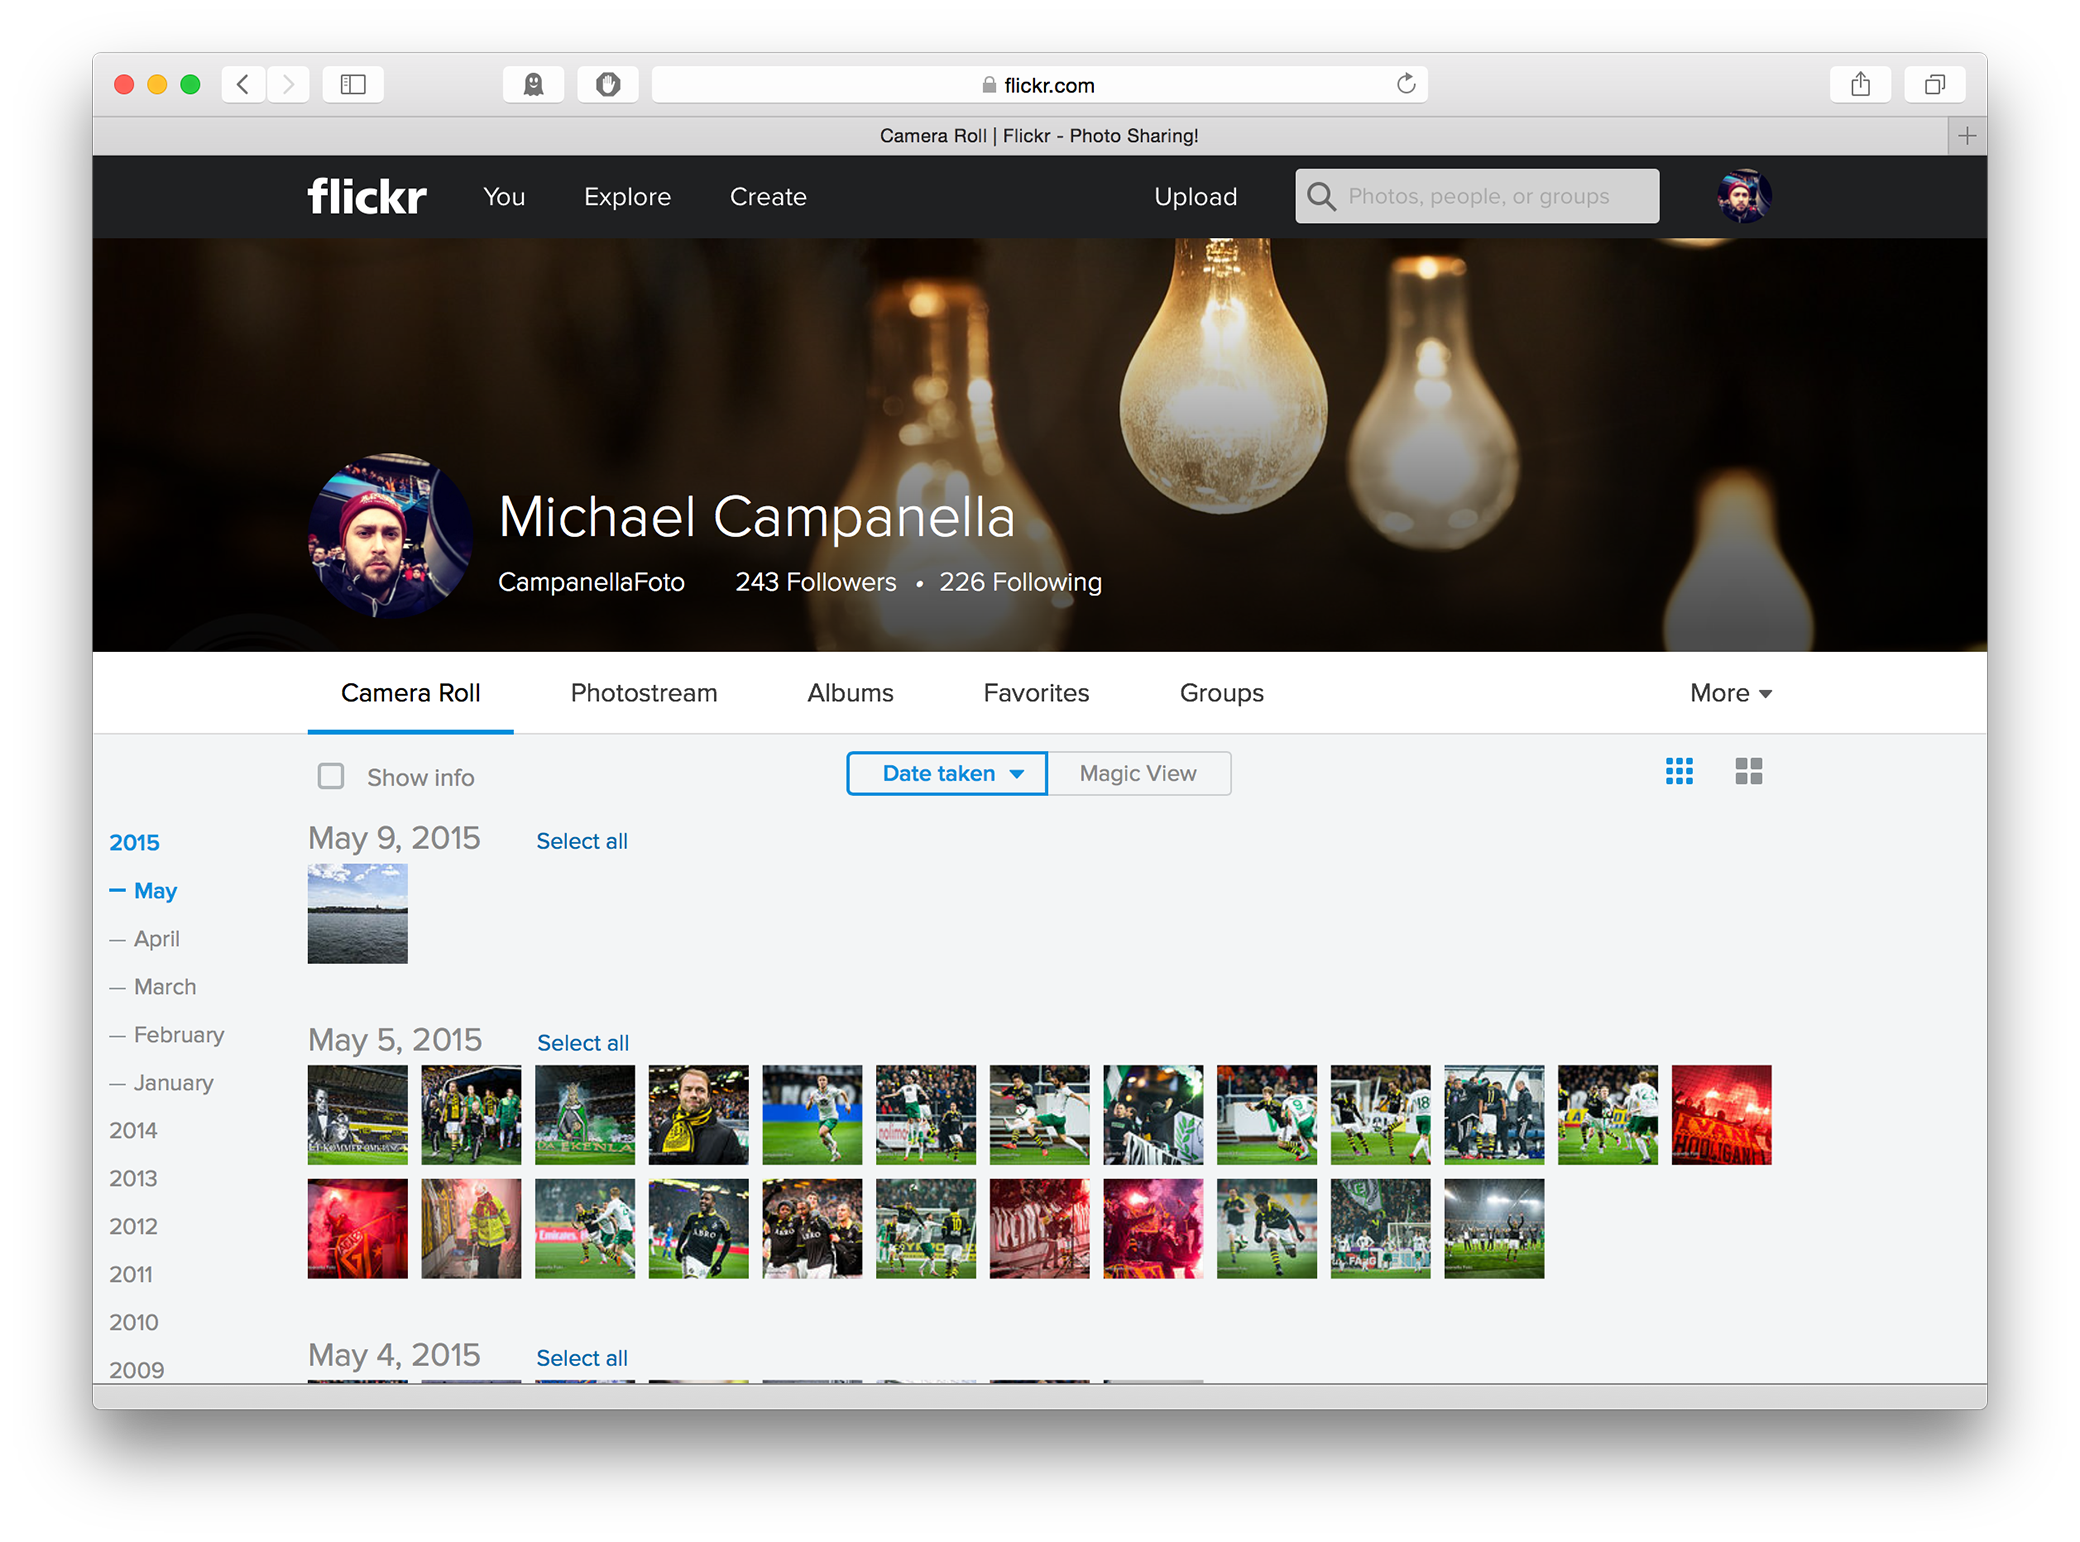 Flickr 4.0 - Camera Roll